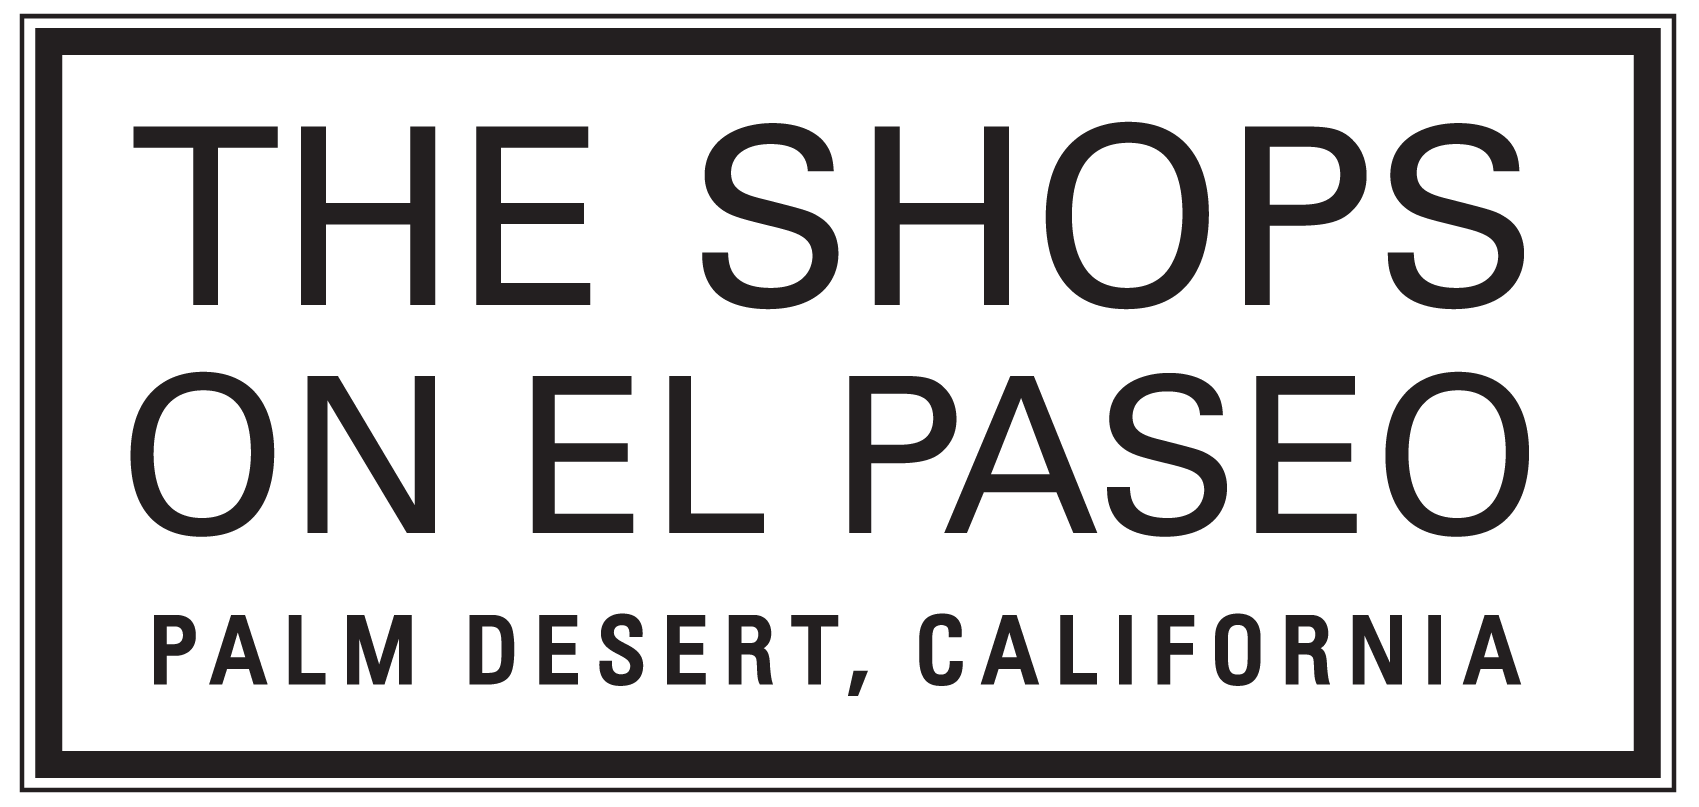 73151 El Paseo, Palm Desert, CA 92260 - El Paseo Collection